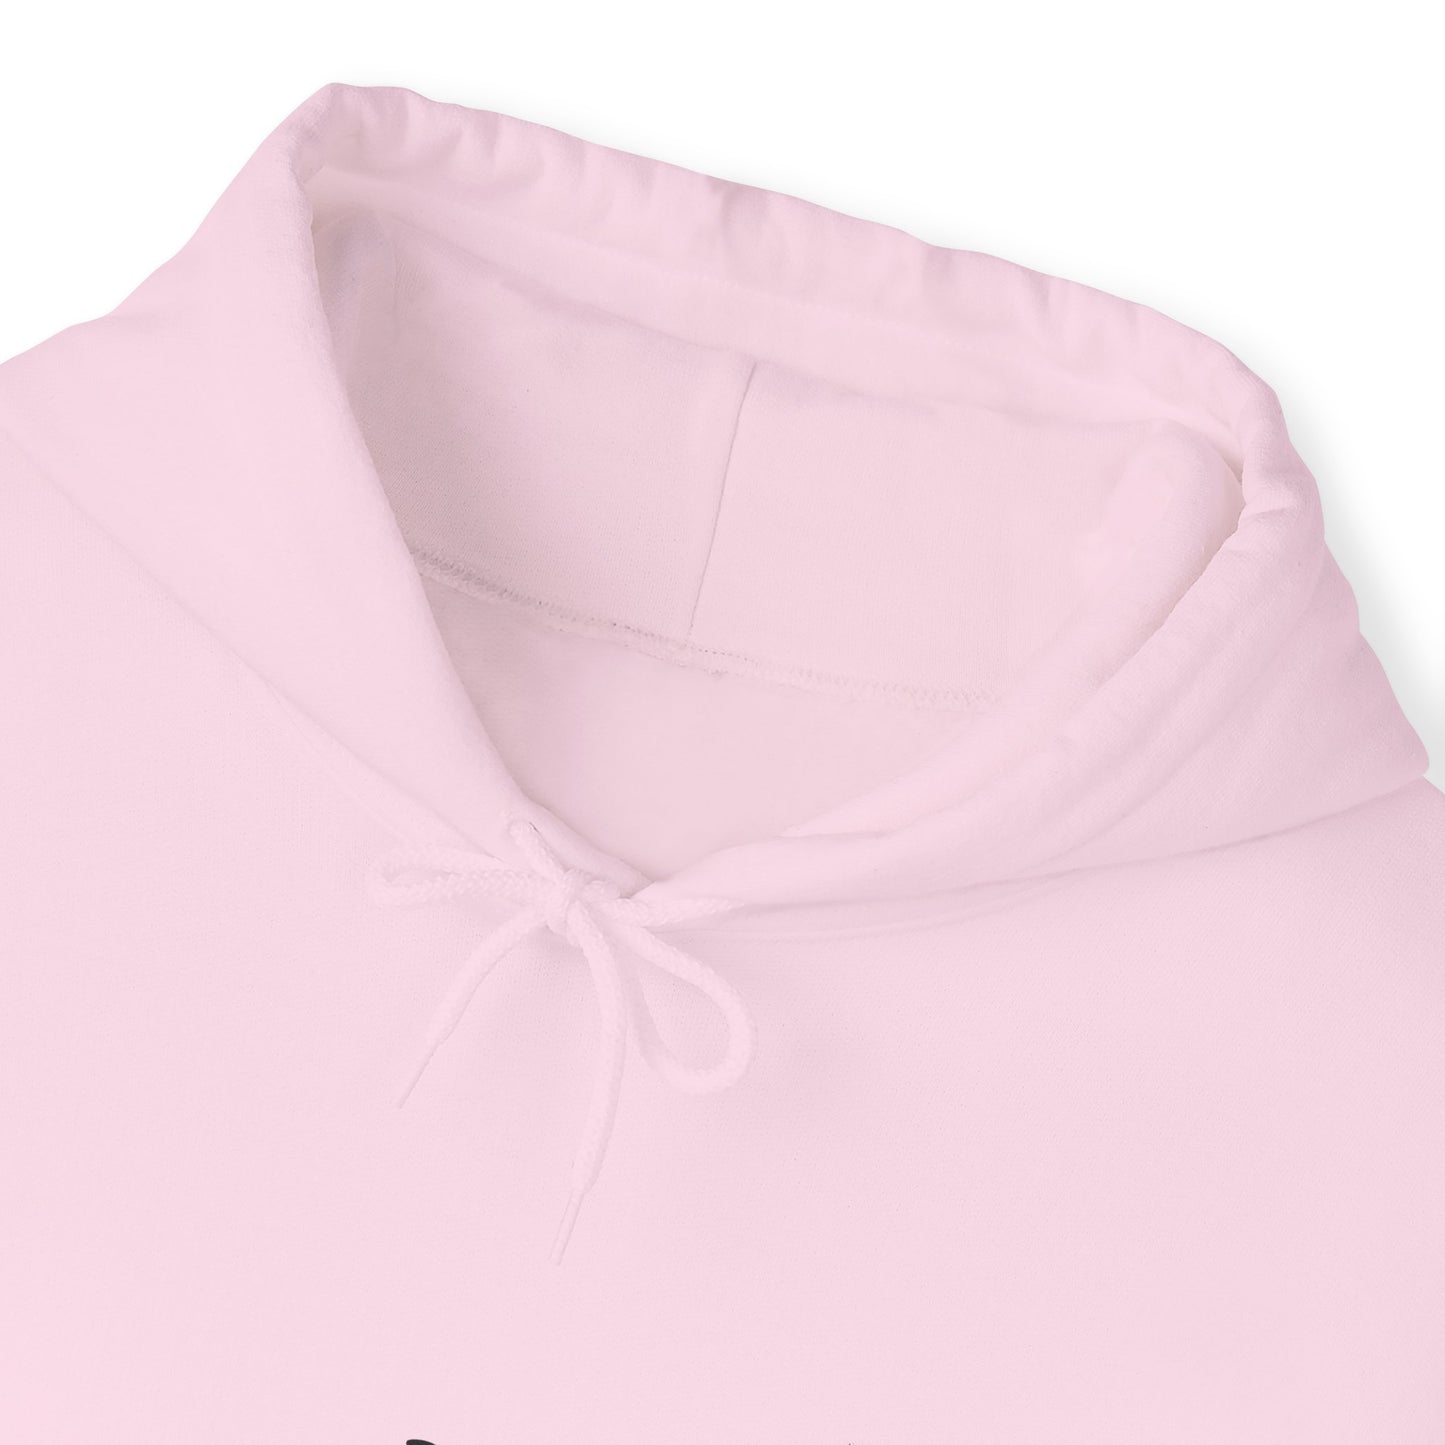 Mermaids Unisex Heavy Blend™ Hooded Sweatshirt